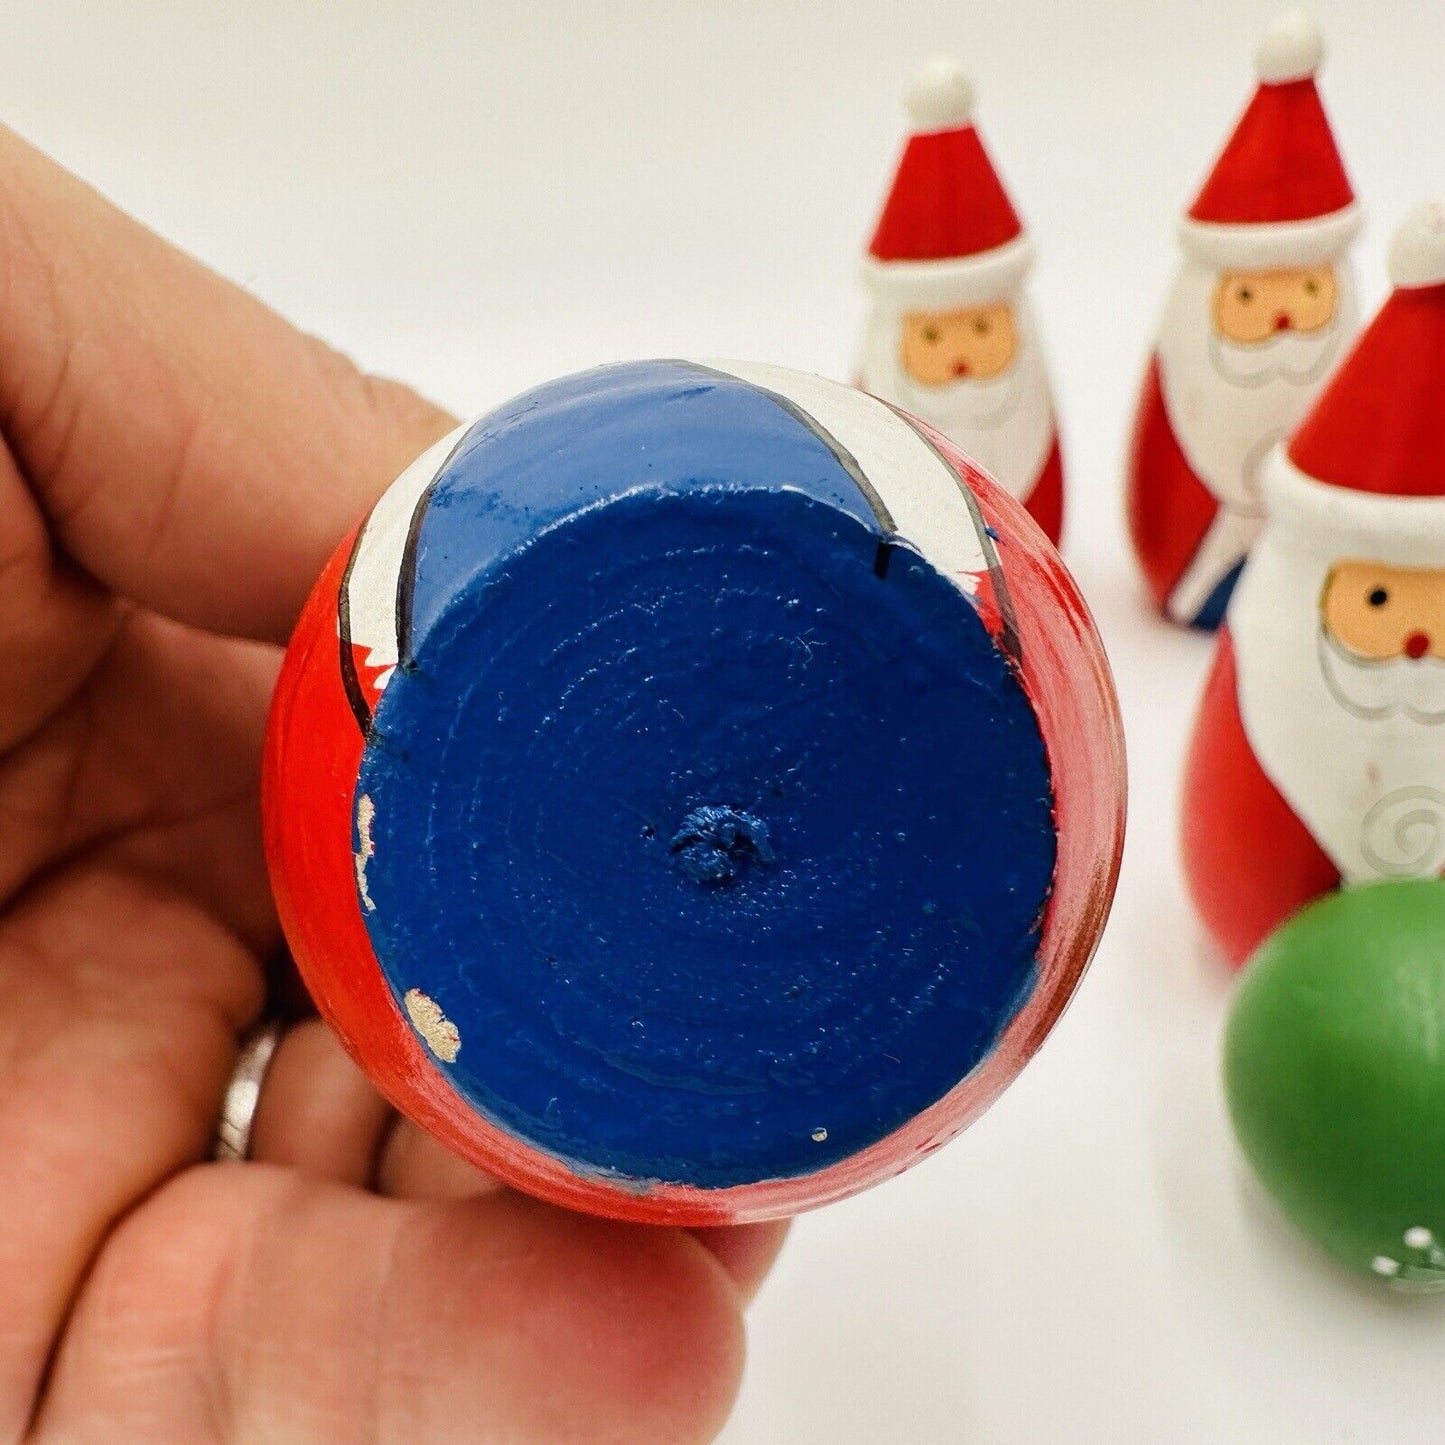 Santa Bowling Pins Set Christmas Decor Vintage Wooden Hand Painted